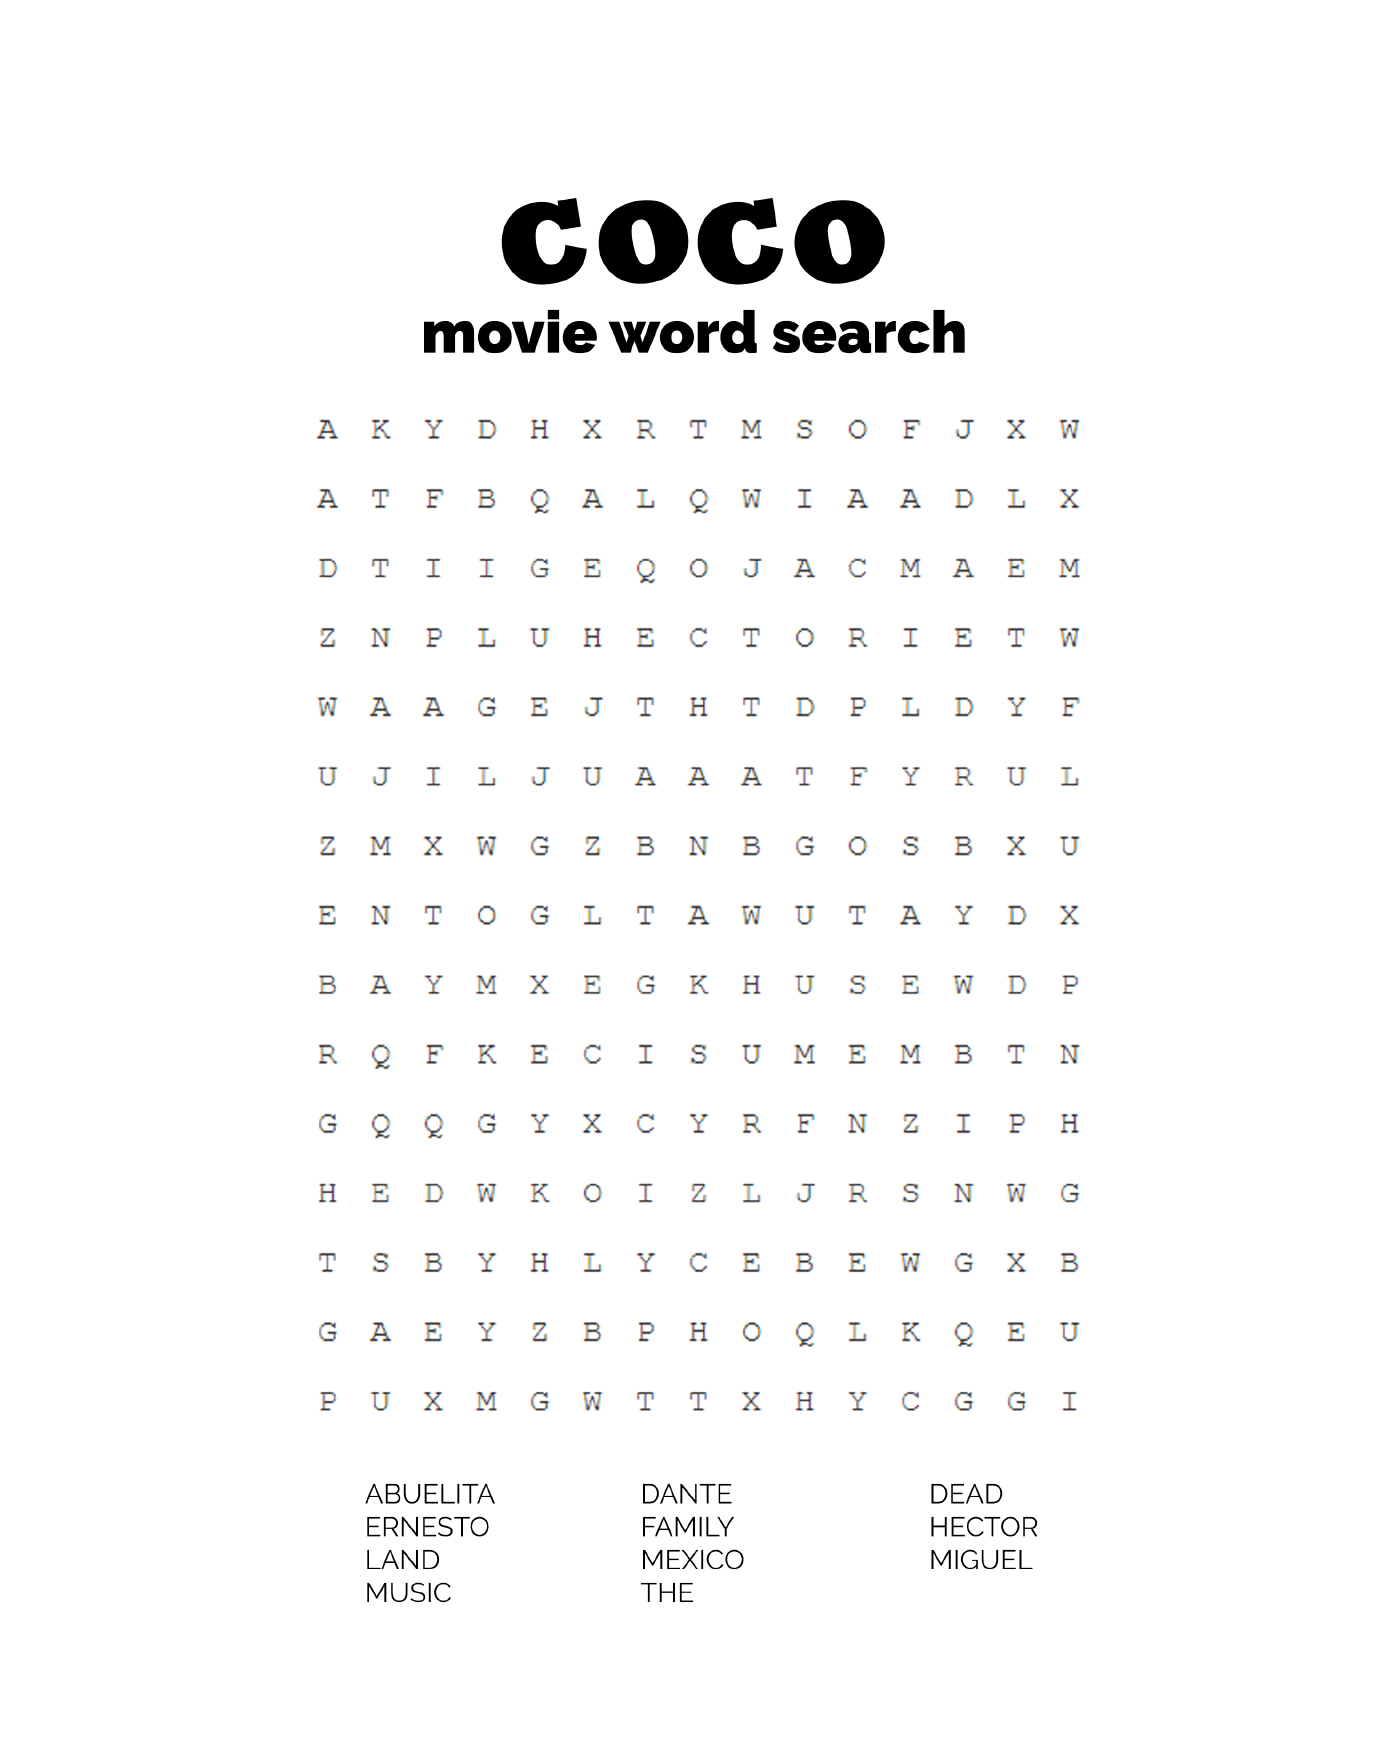  Buscar palabras basadas en la película Coco 